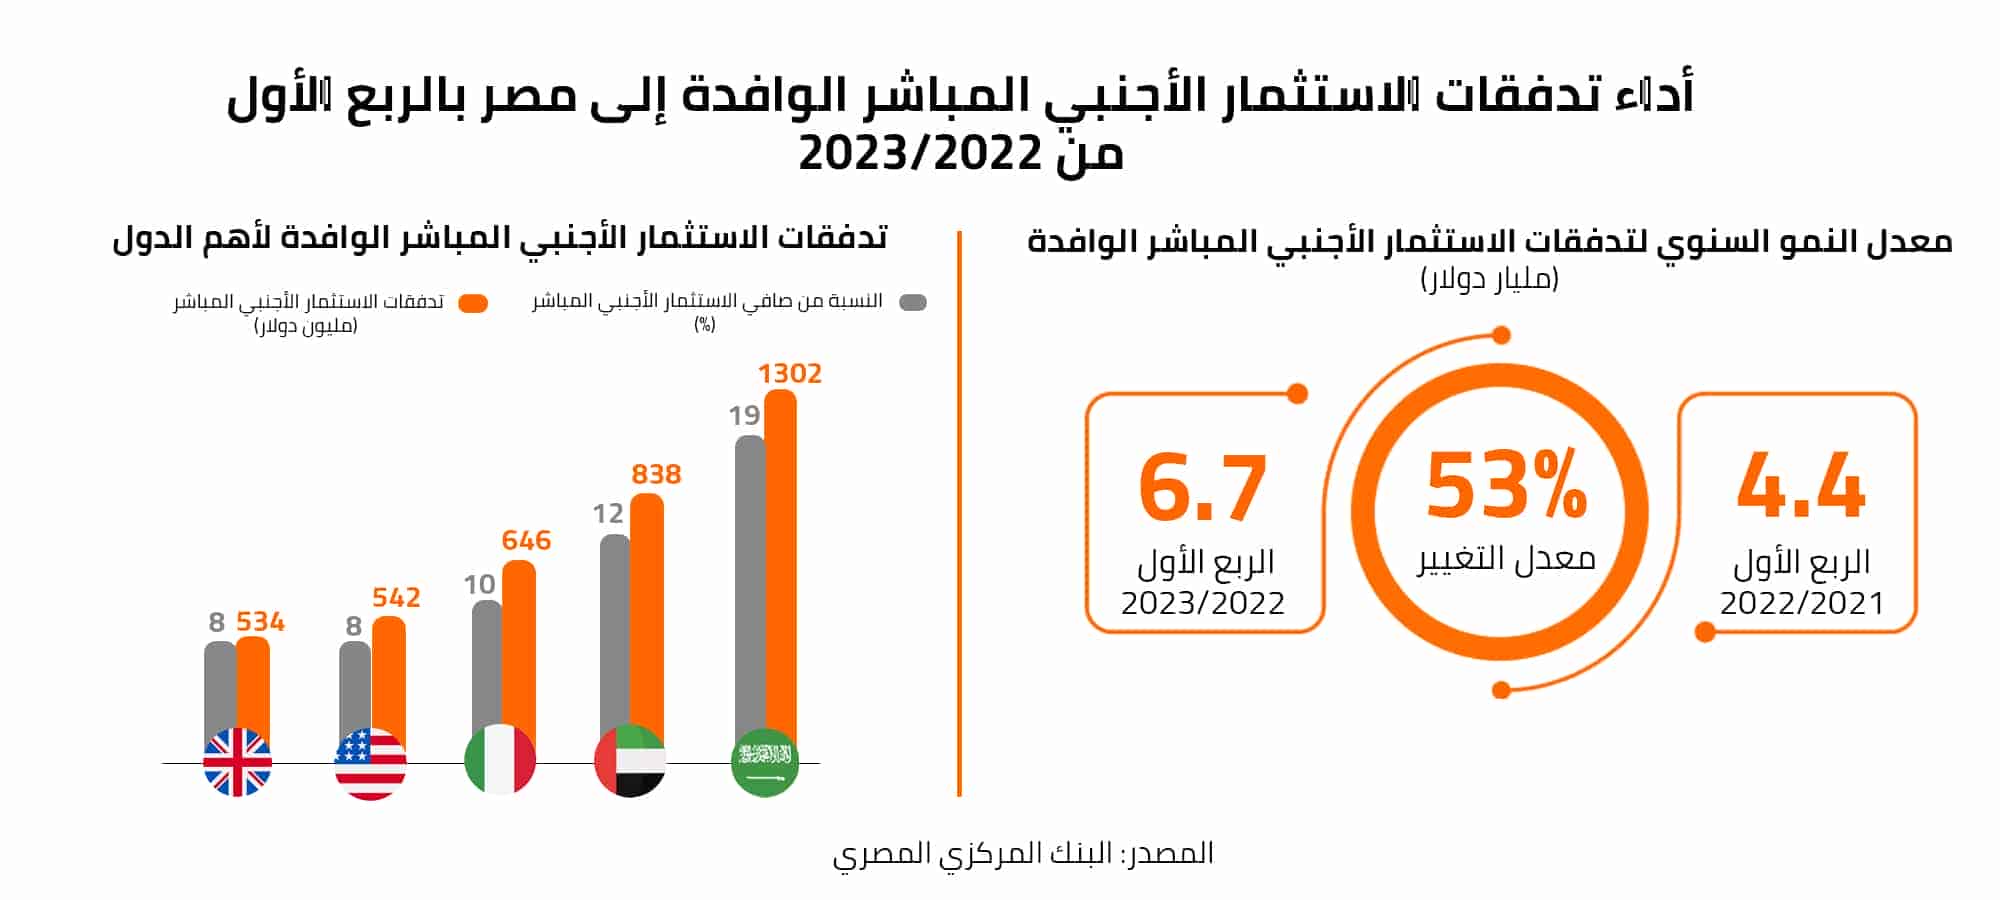 أداء تدفقات الاستثمار الأجنبي المباشر الوافدة إلى مصر بالربع الأول من 2022/2023 